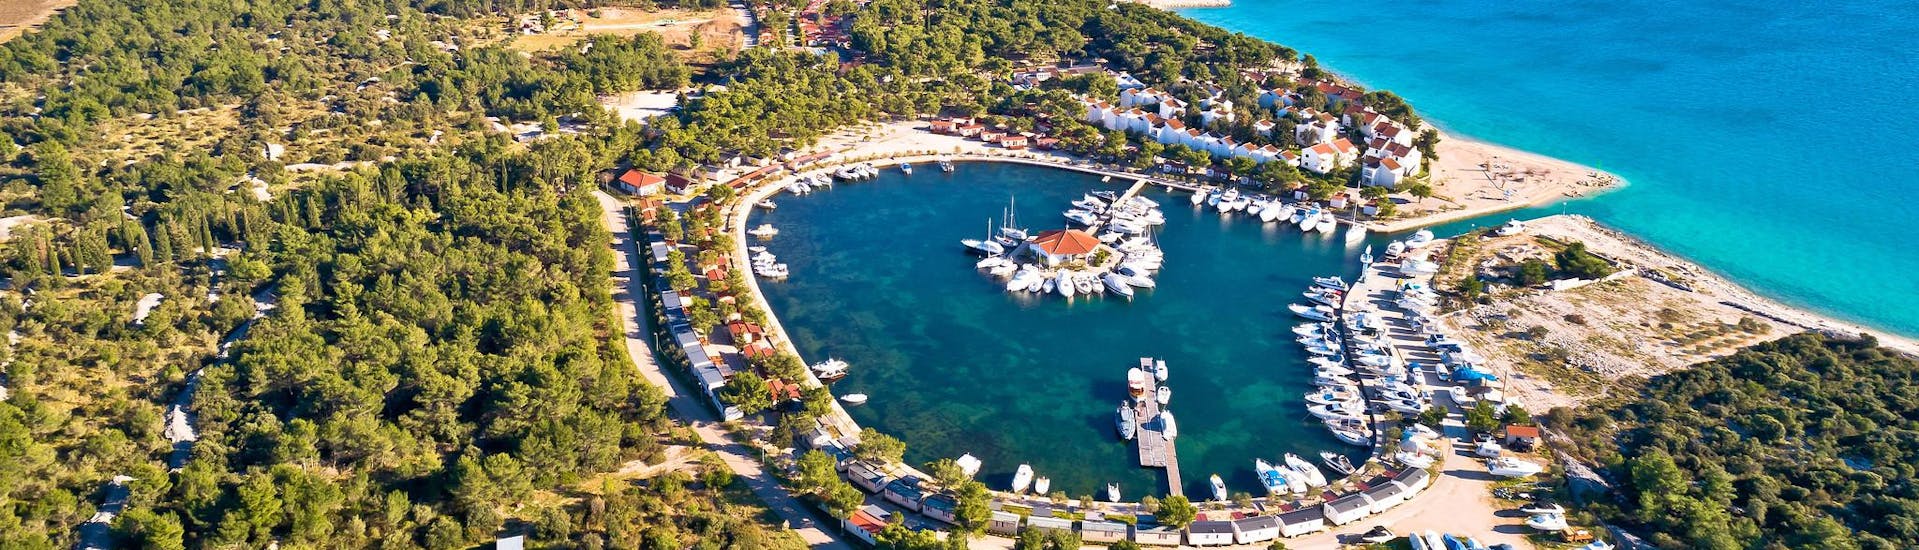 Luchtfoto van Solaris, een vertrekpunt voor boottochten in Dalmatië.